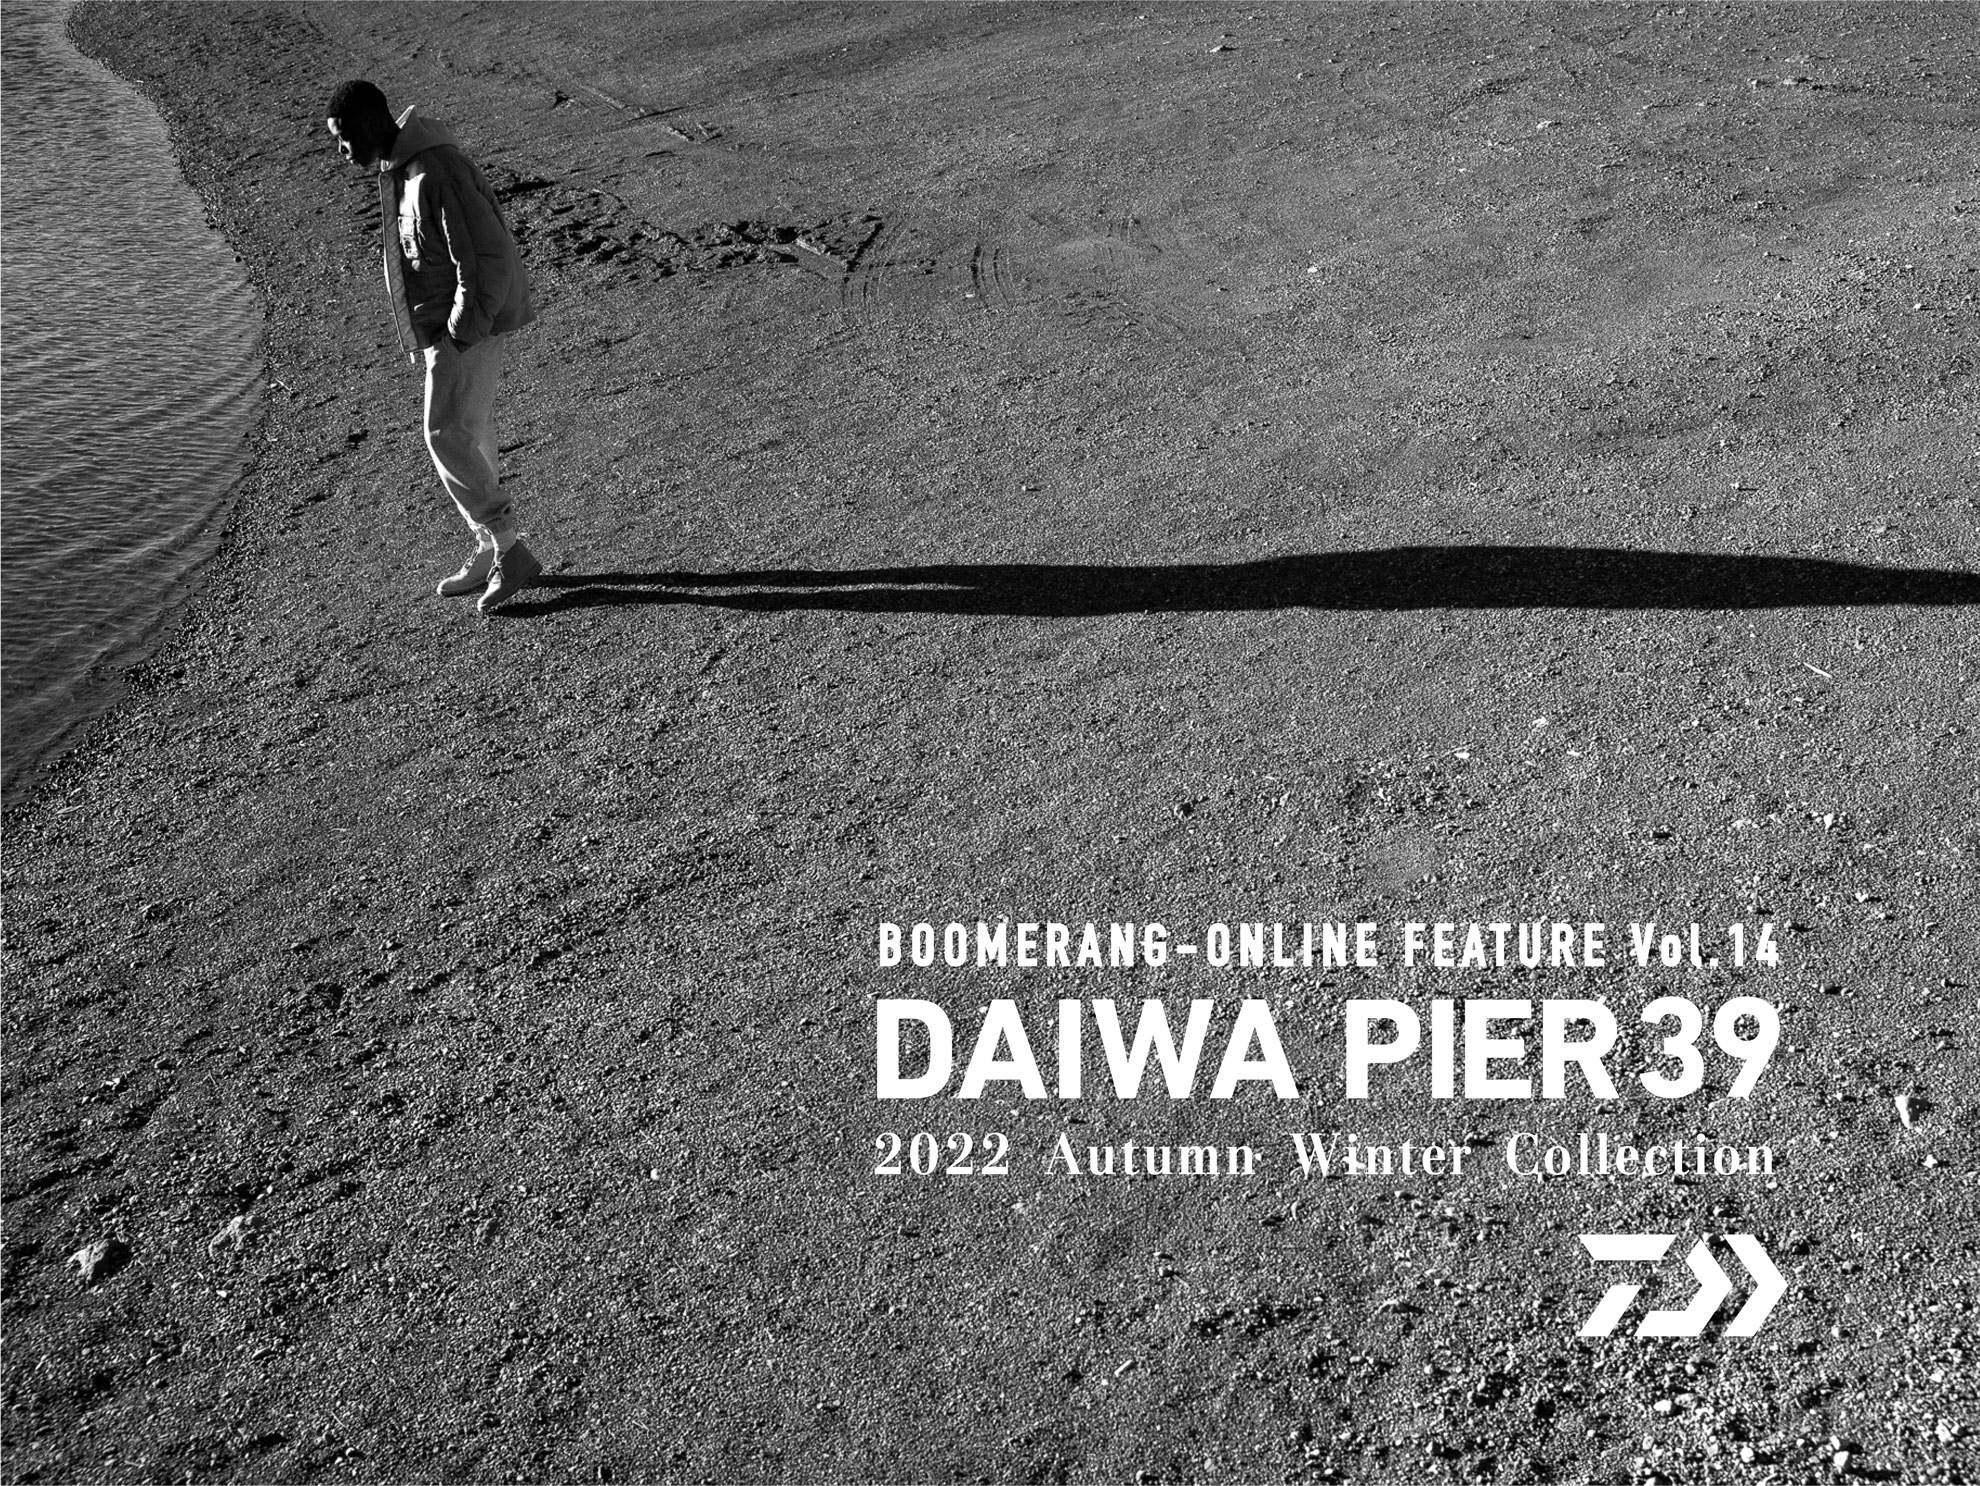 特集 FEATURE Vol.14 /DAIWA PIER39 2022Autumn Winter Collection 5th Delivery